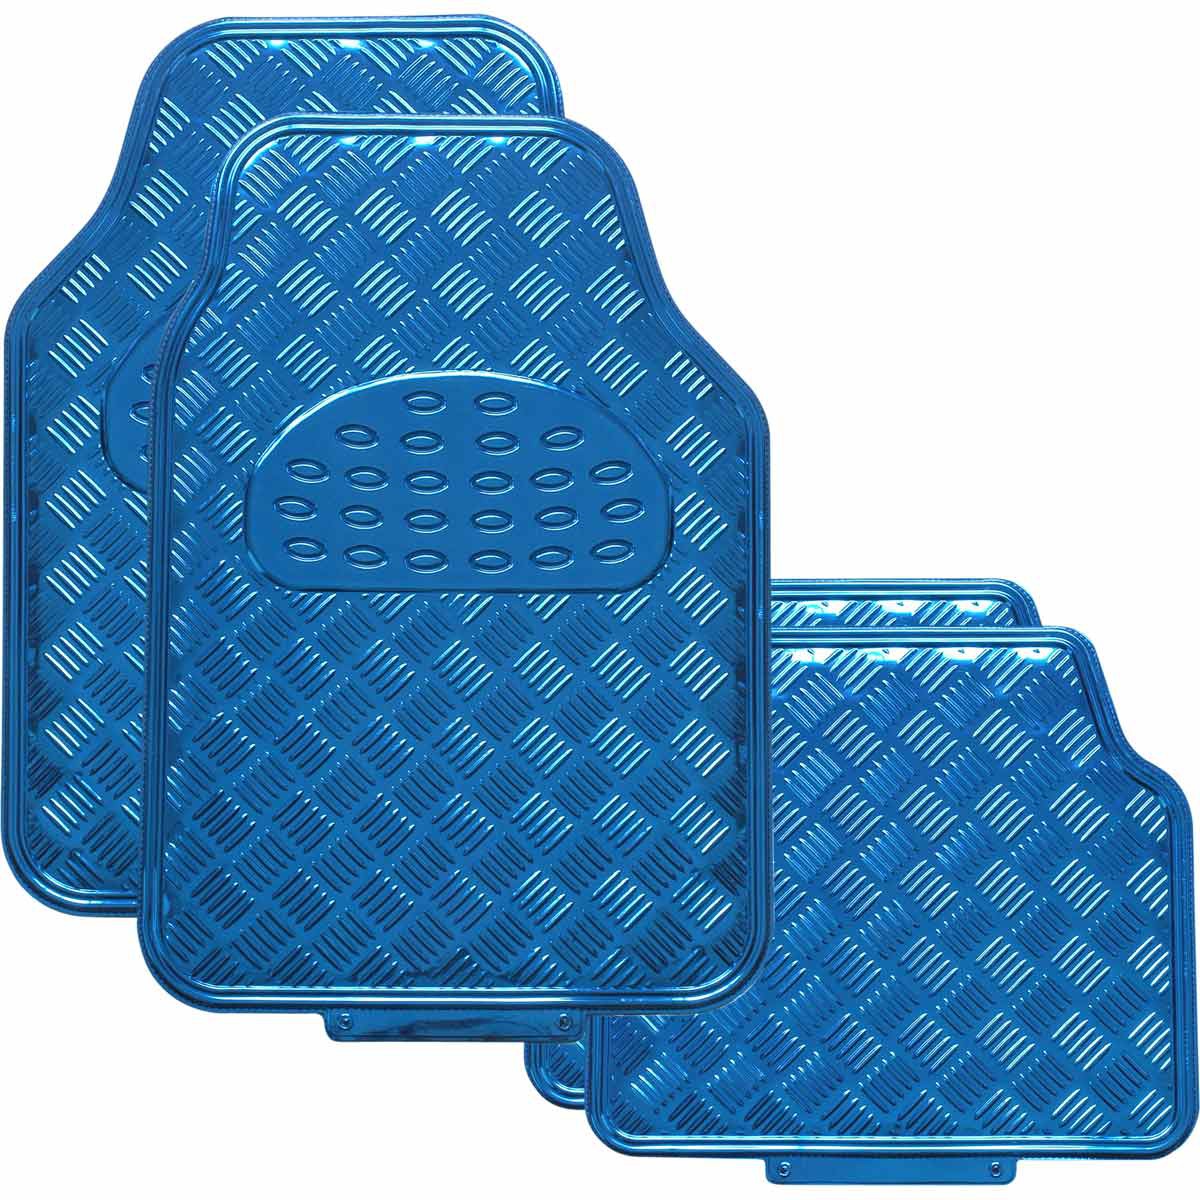 Sca Checkerplate Car Floor Mats Pvc Blue Set Of 4 Supercheap